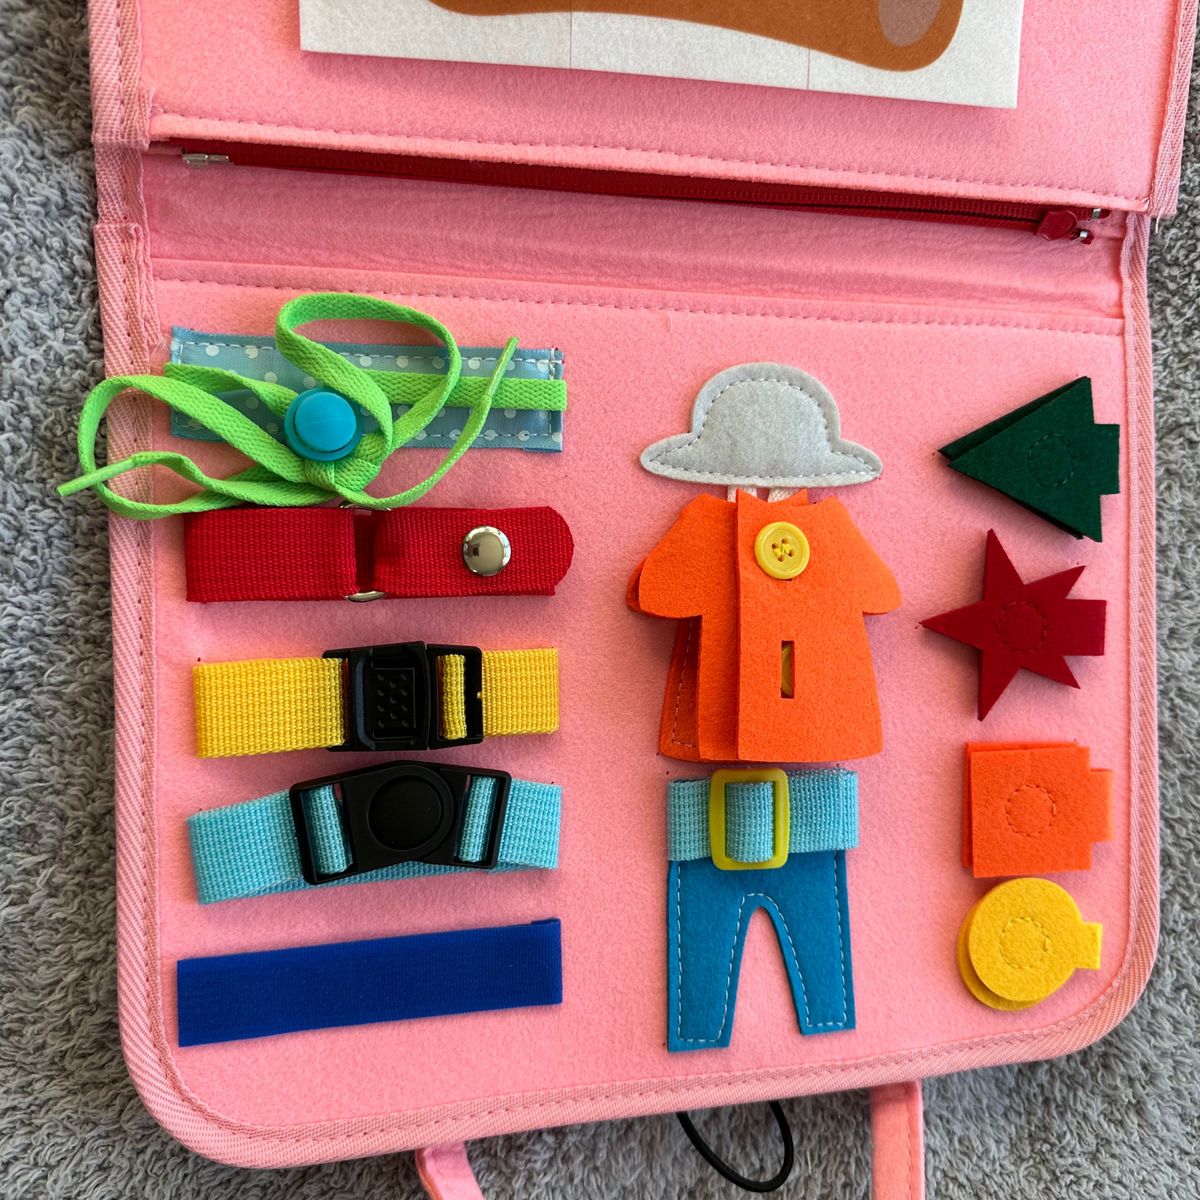 ビジーボード 知育玩具 モンテッソーリ 知育 バッグ 教育 幼児 パズル 学習 知 育 おもちゃ ピンク モンテッソーリ 